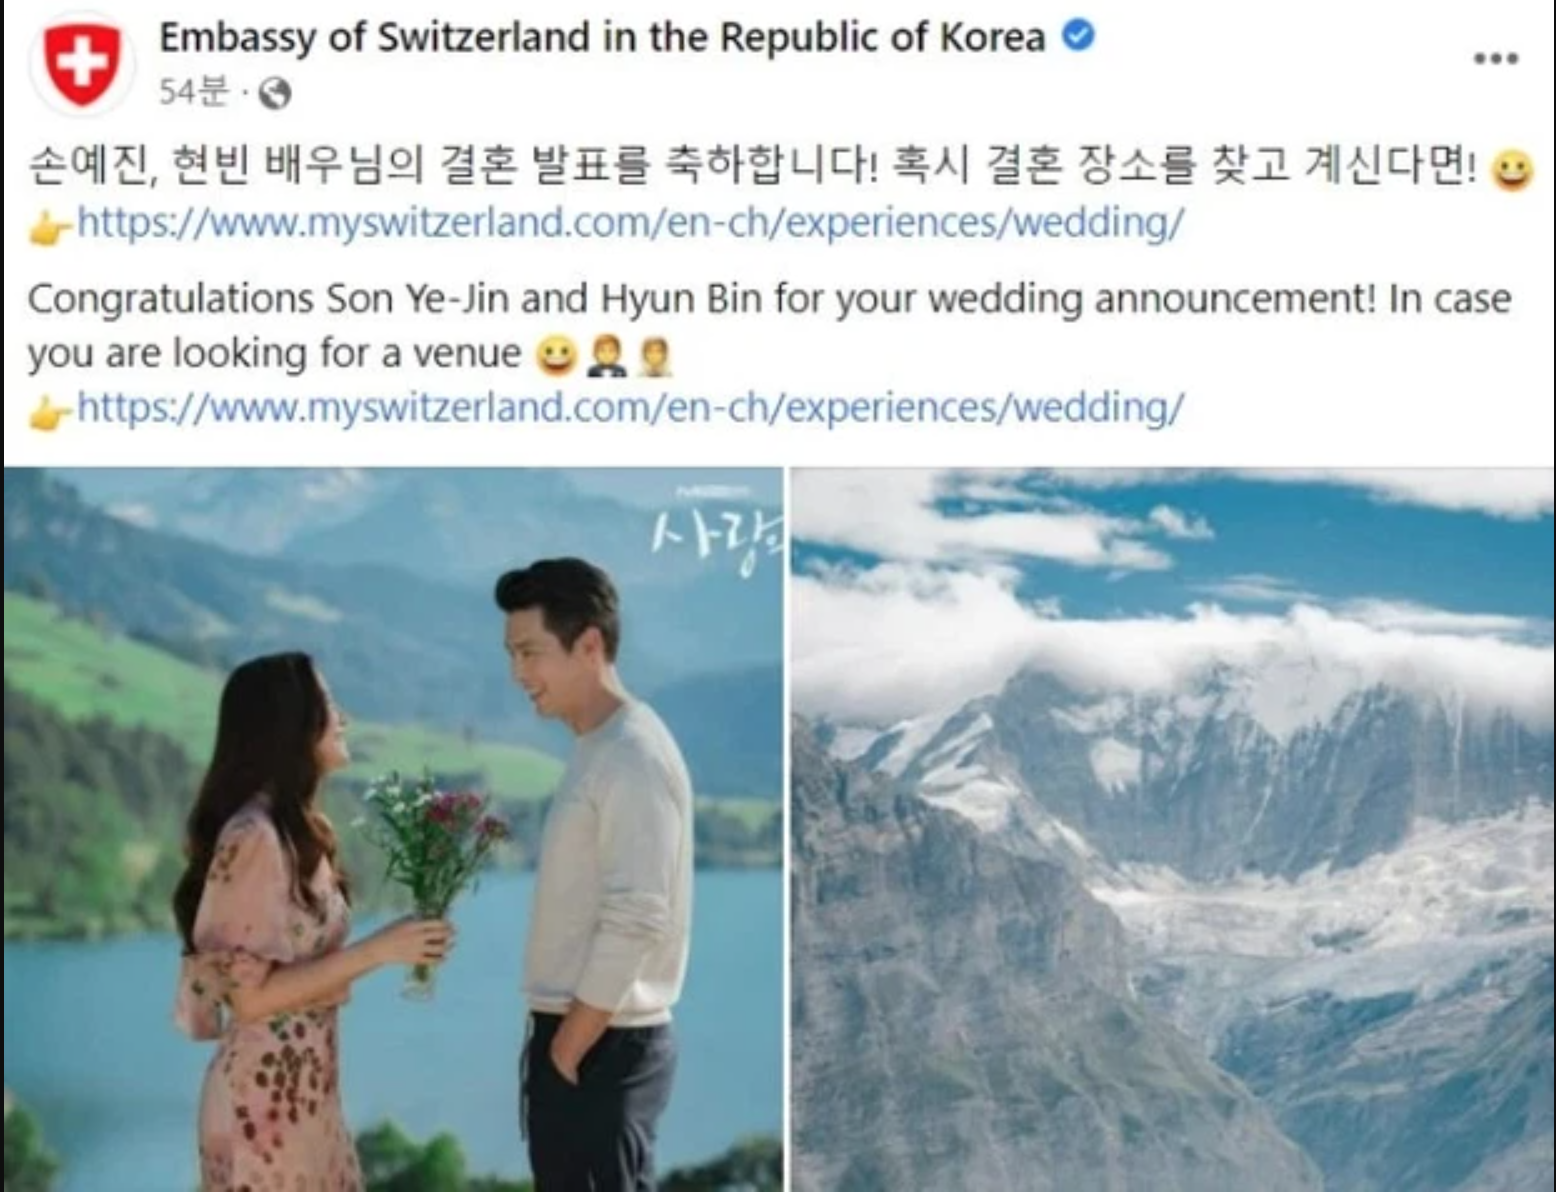 Trước đó, cặp đôi này đã được Đại sứ quán Thuỵ Sĩ tại Hàn Quốc gợi ý địa điểm và kinh nghiệm tổ chức đám cưới ở Thuỵ Sĩ khá tỉ mỉ.